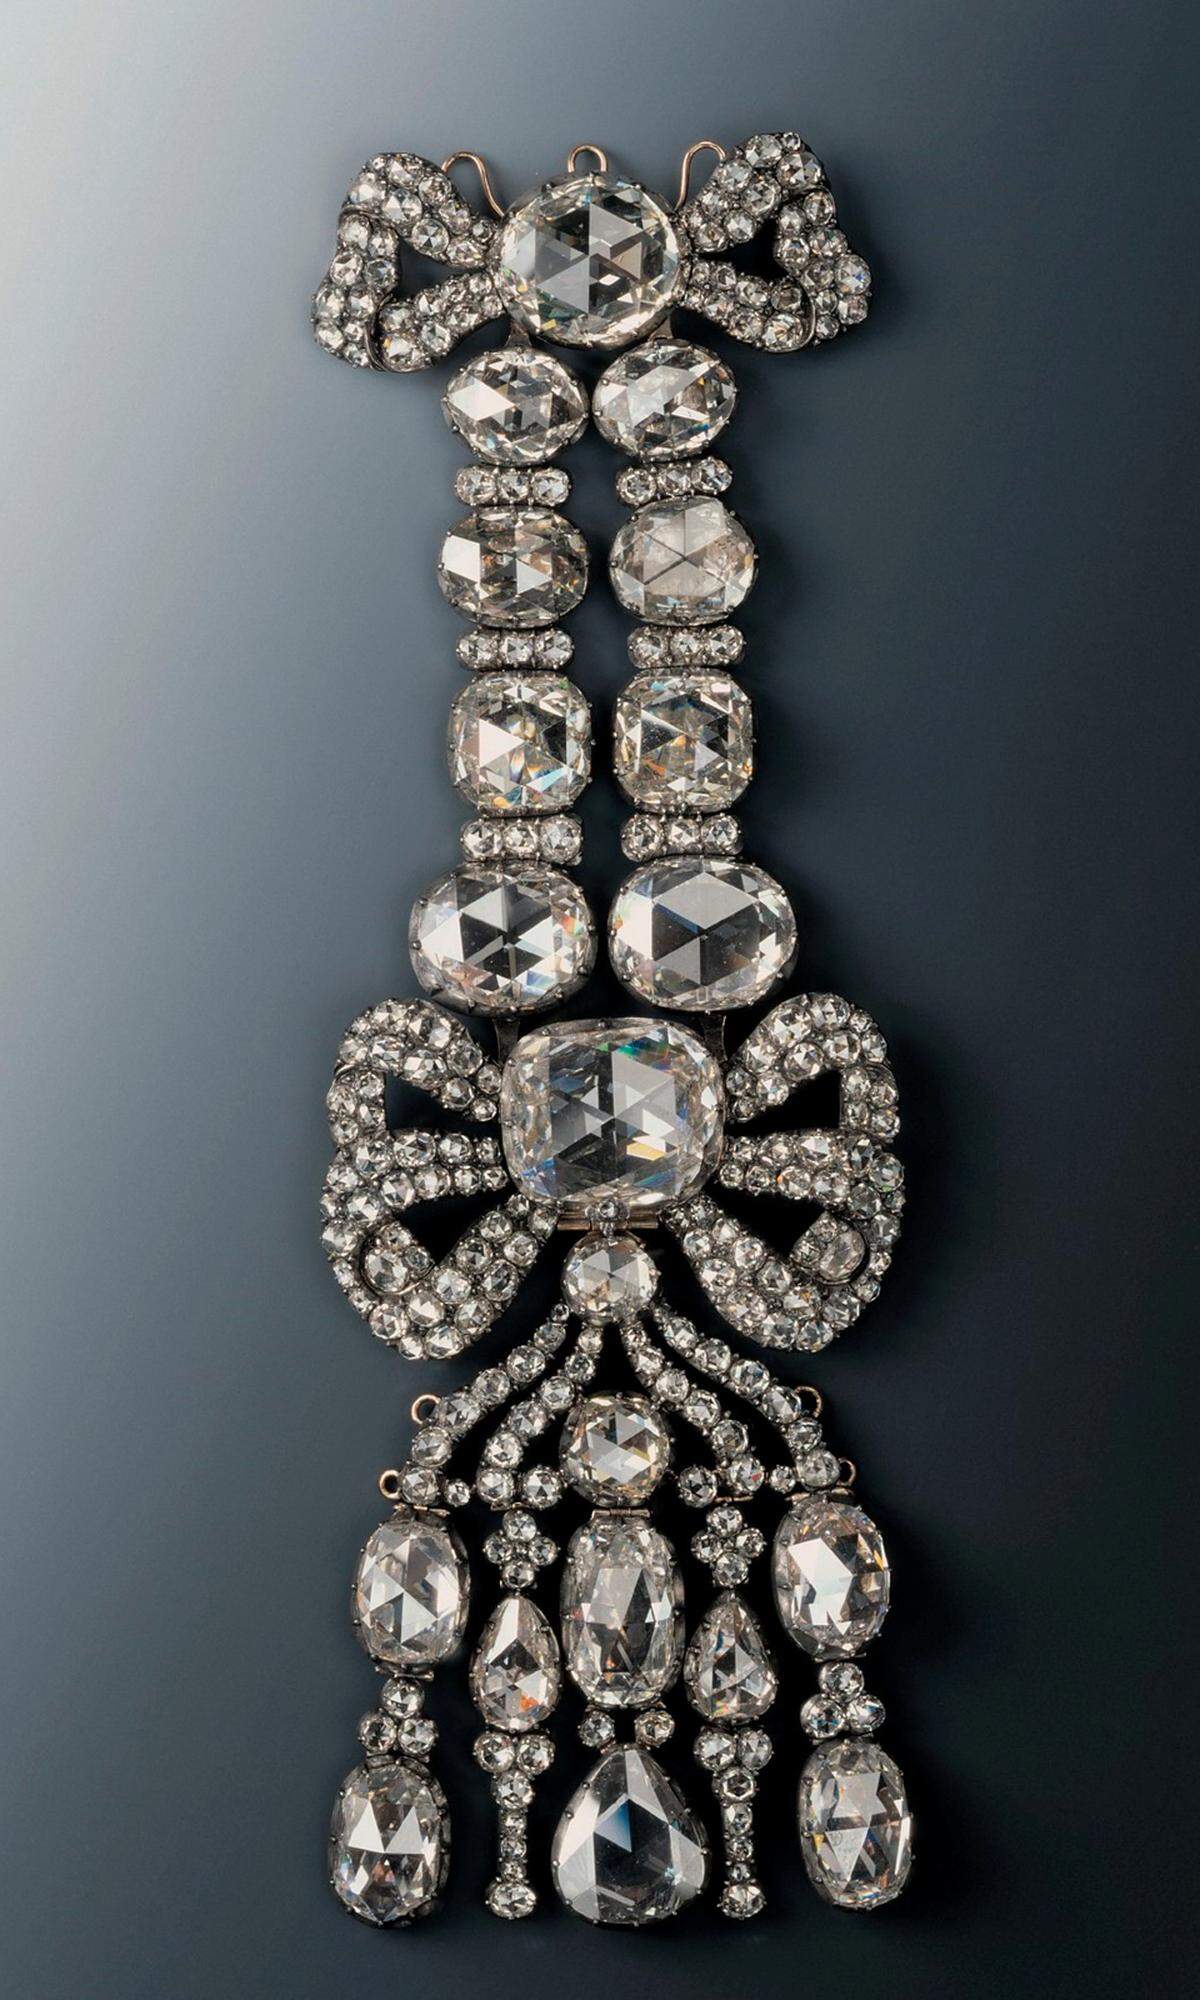 Dies ist eine sogenannte Achselschleife - auch als "Epaulette" bezeichnet - ist mit 20 großen und 216 kleinen Diamanten besetzt. Sie wurde früher mit Fixierungen an der Kleidung angebracht.